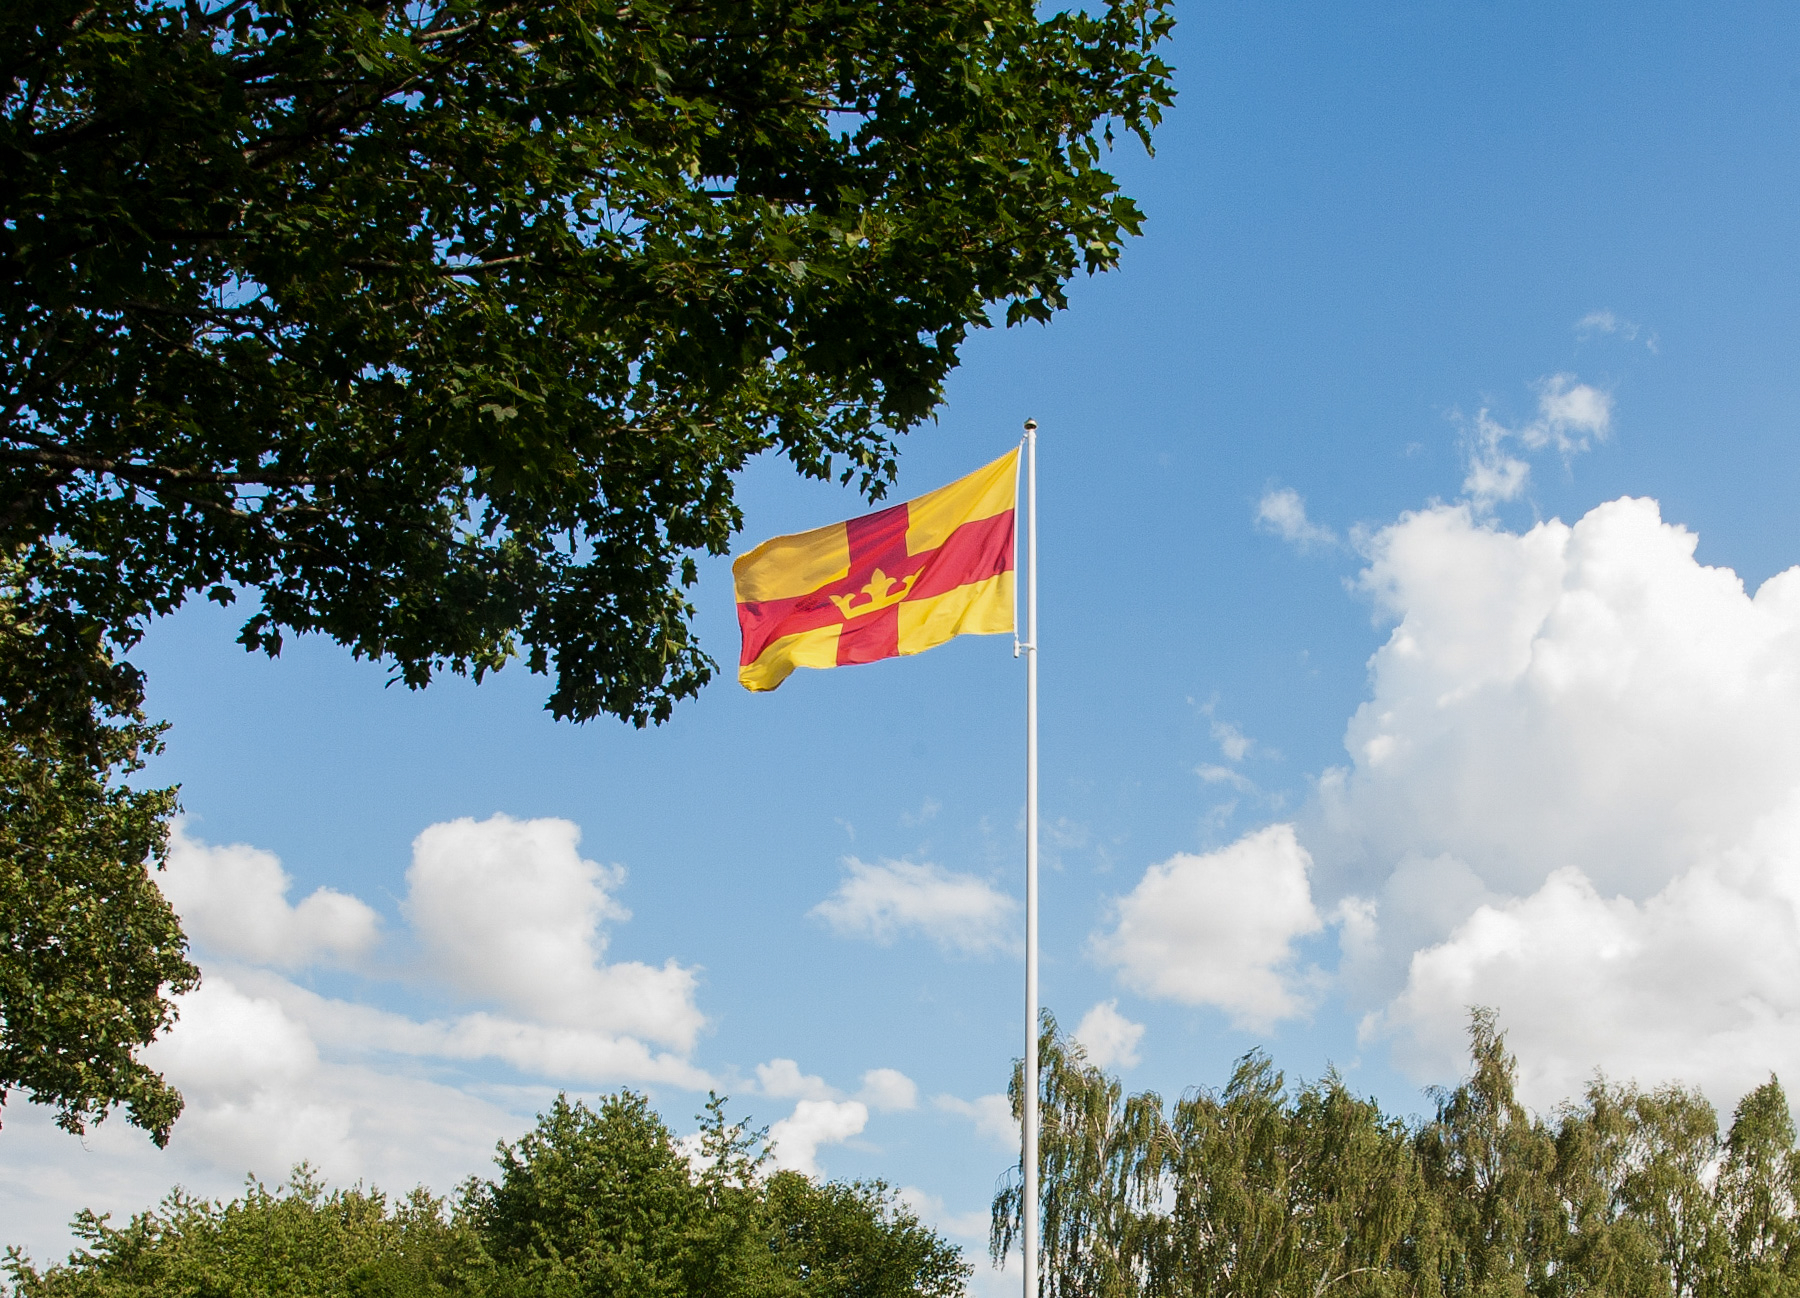 Svenska kyrkans röda och gula flagga vajar i vinden.